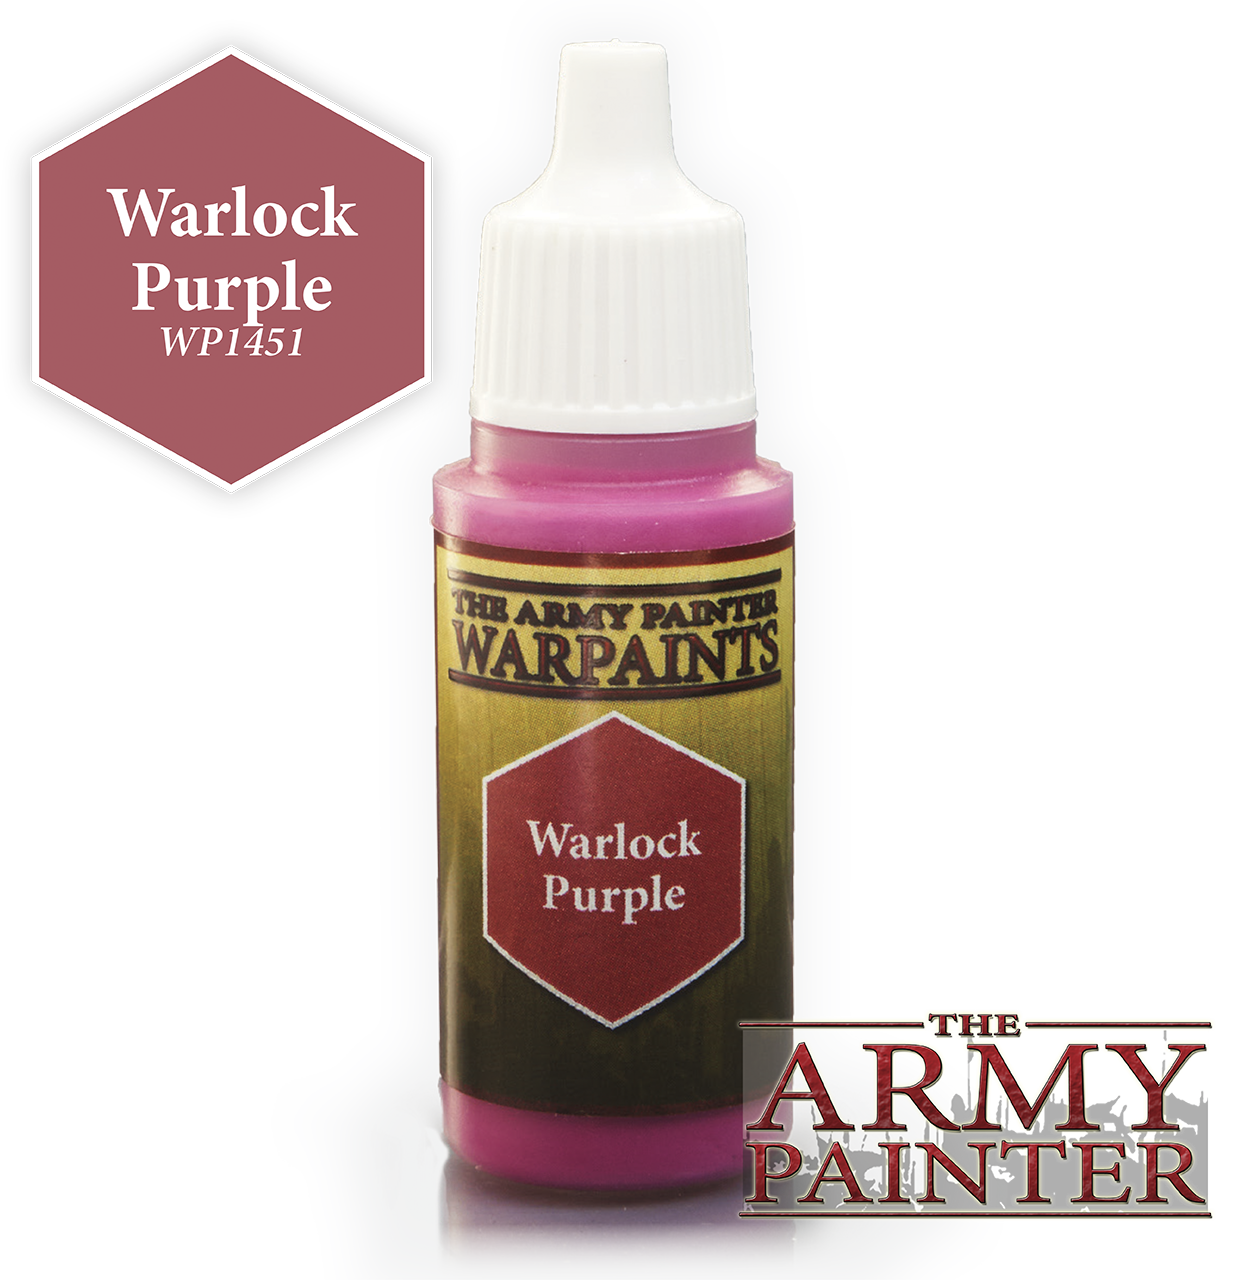 Warlock Purple - Army Painter Warpaints